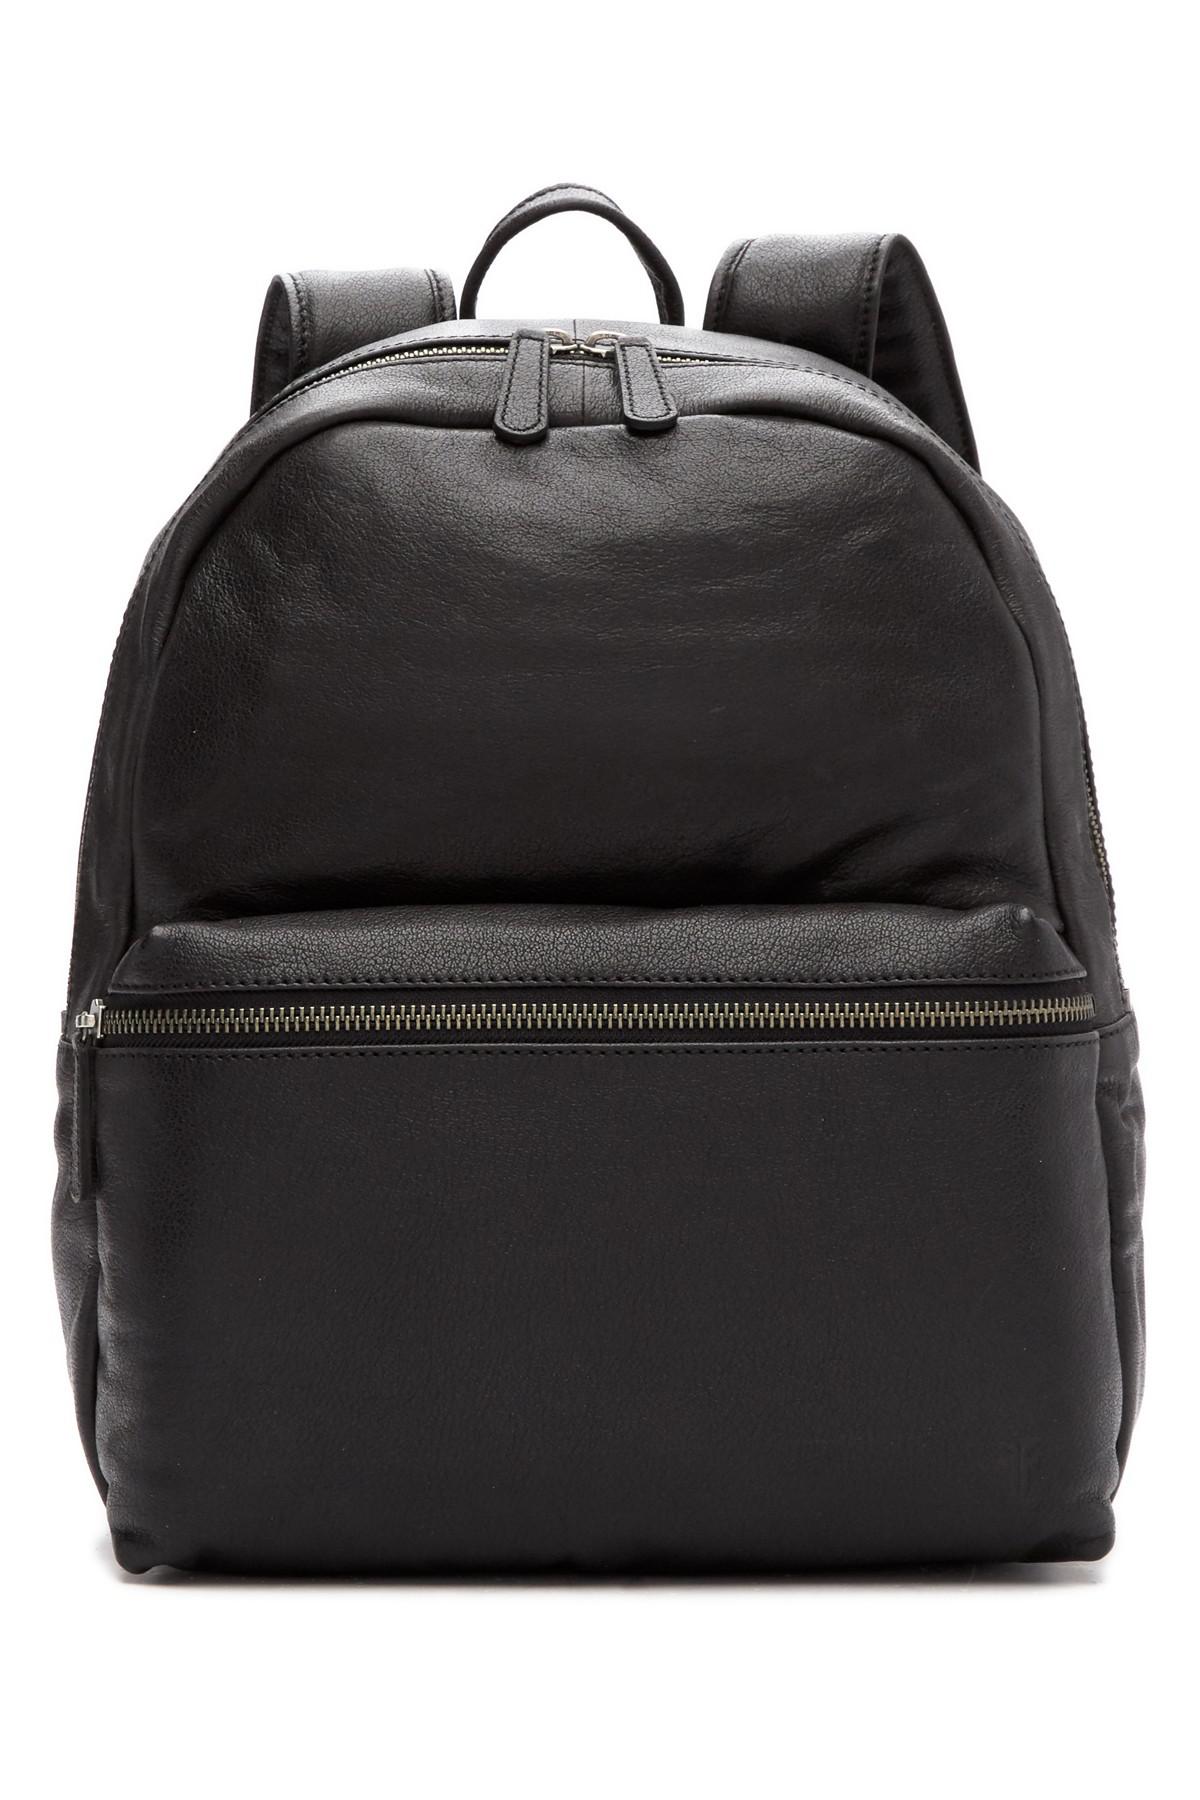 Frye Dylan Leather Backpack in Black for Men - Lyst